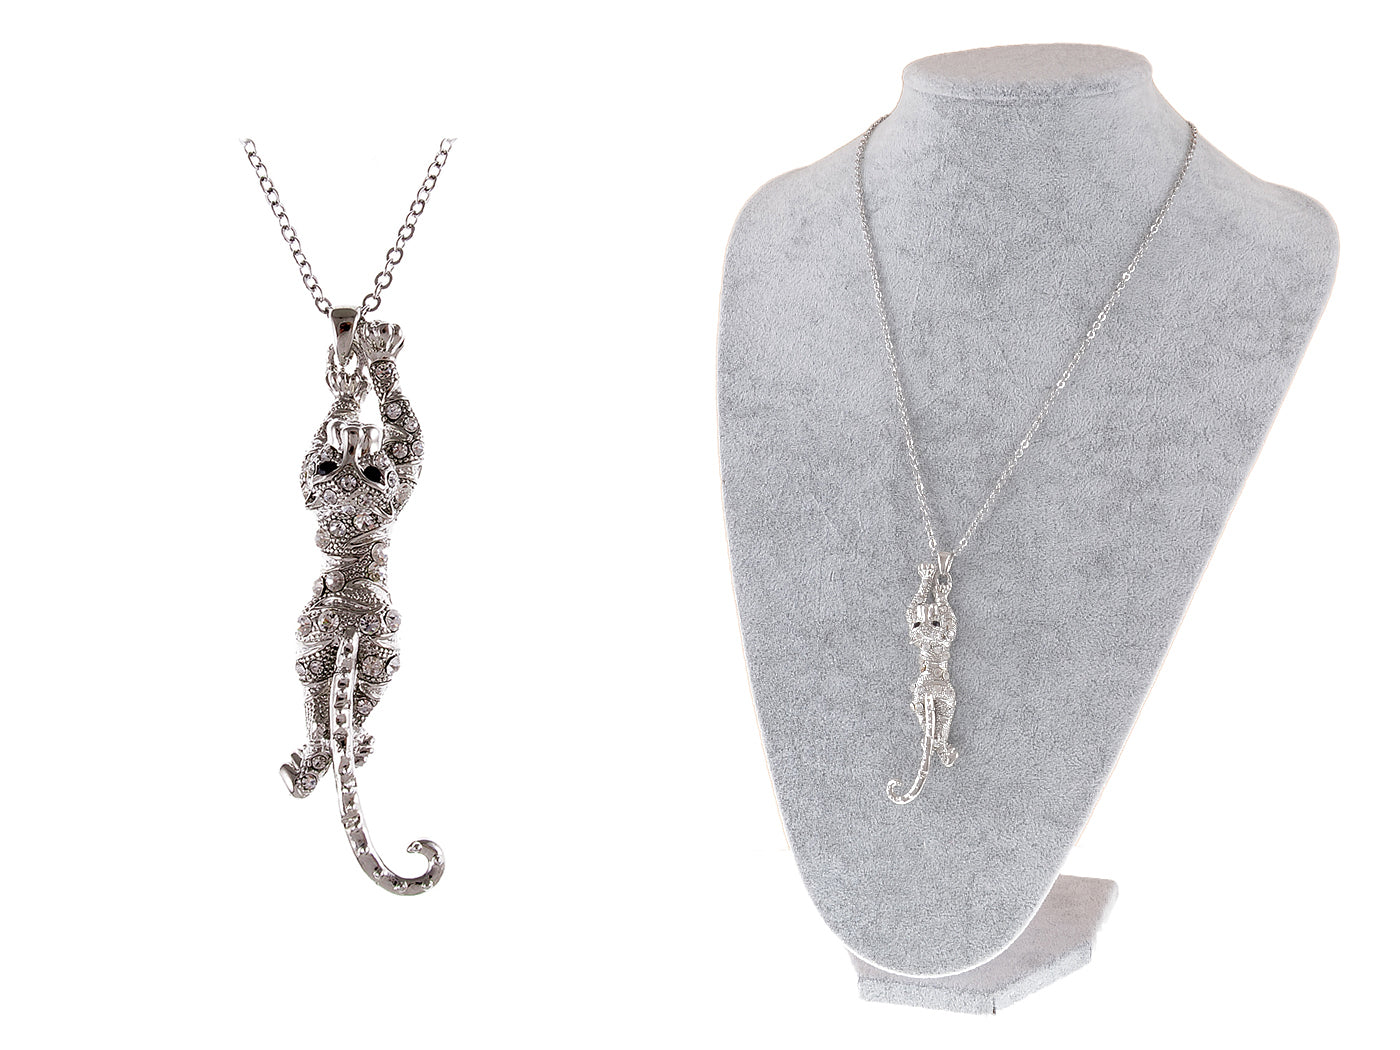 Clr Leopard Necklace Pendant